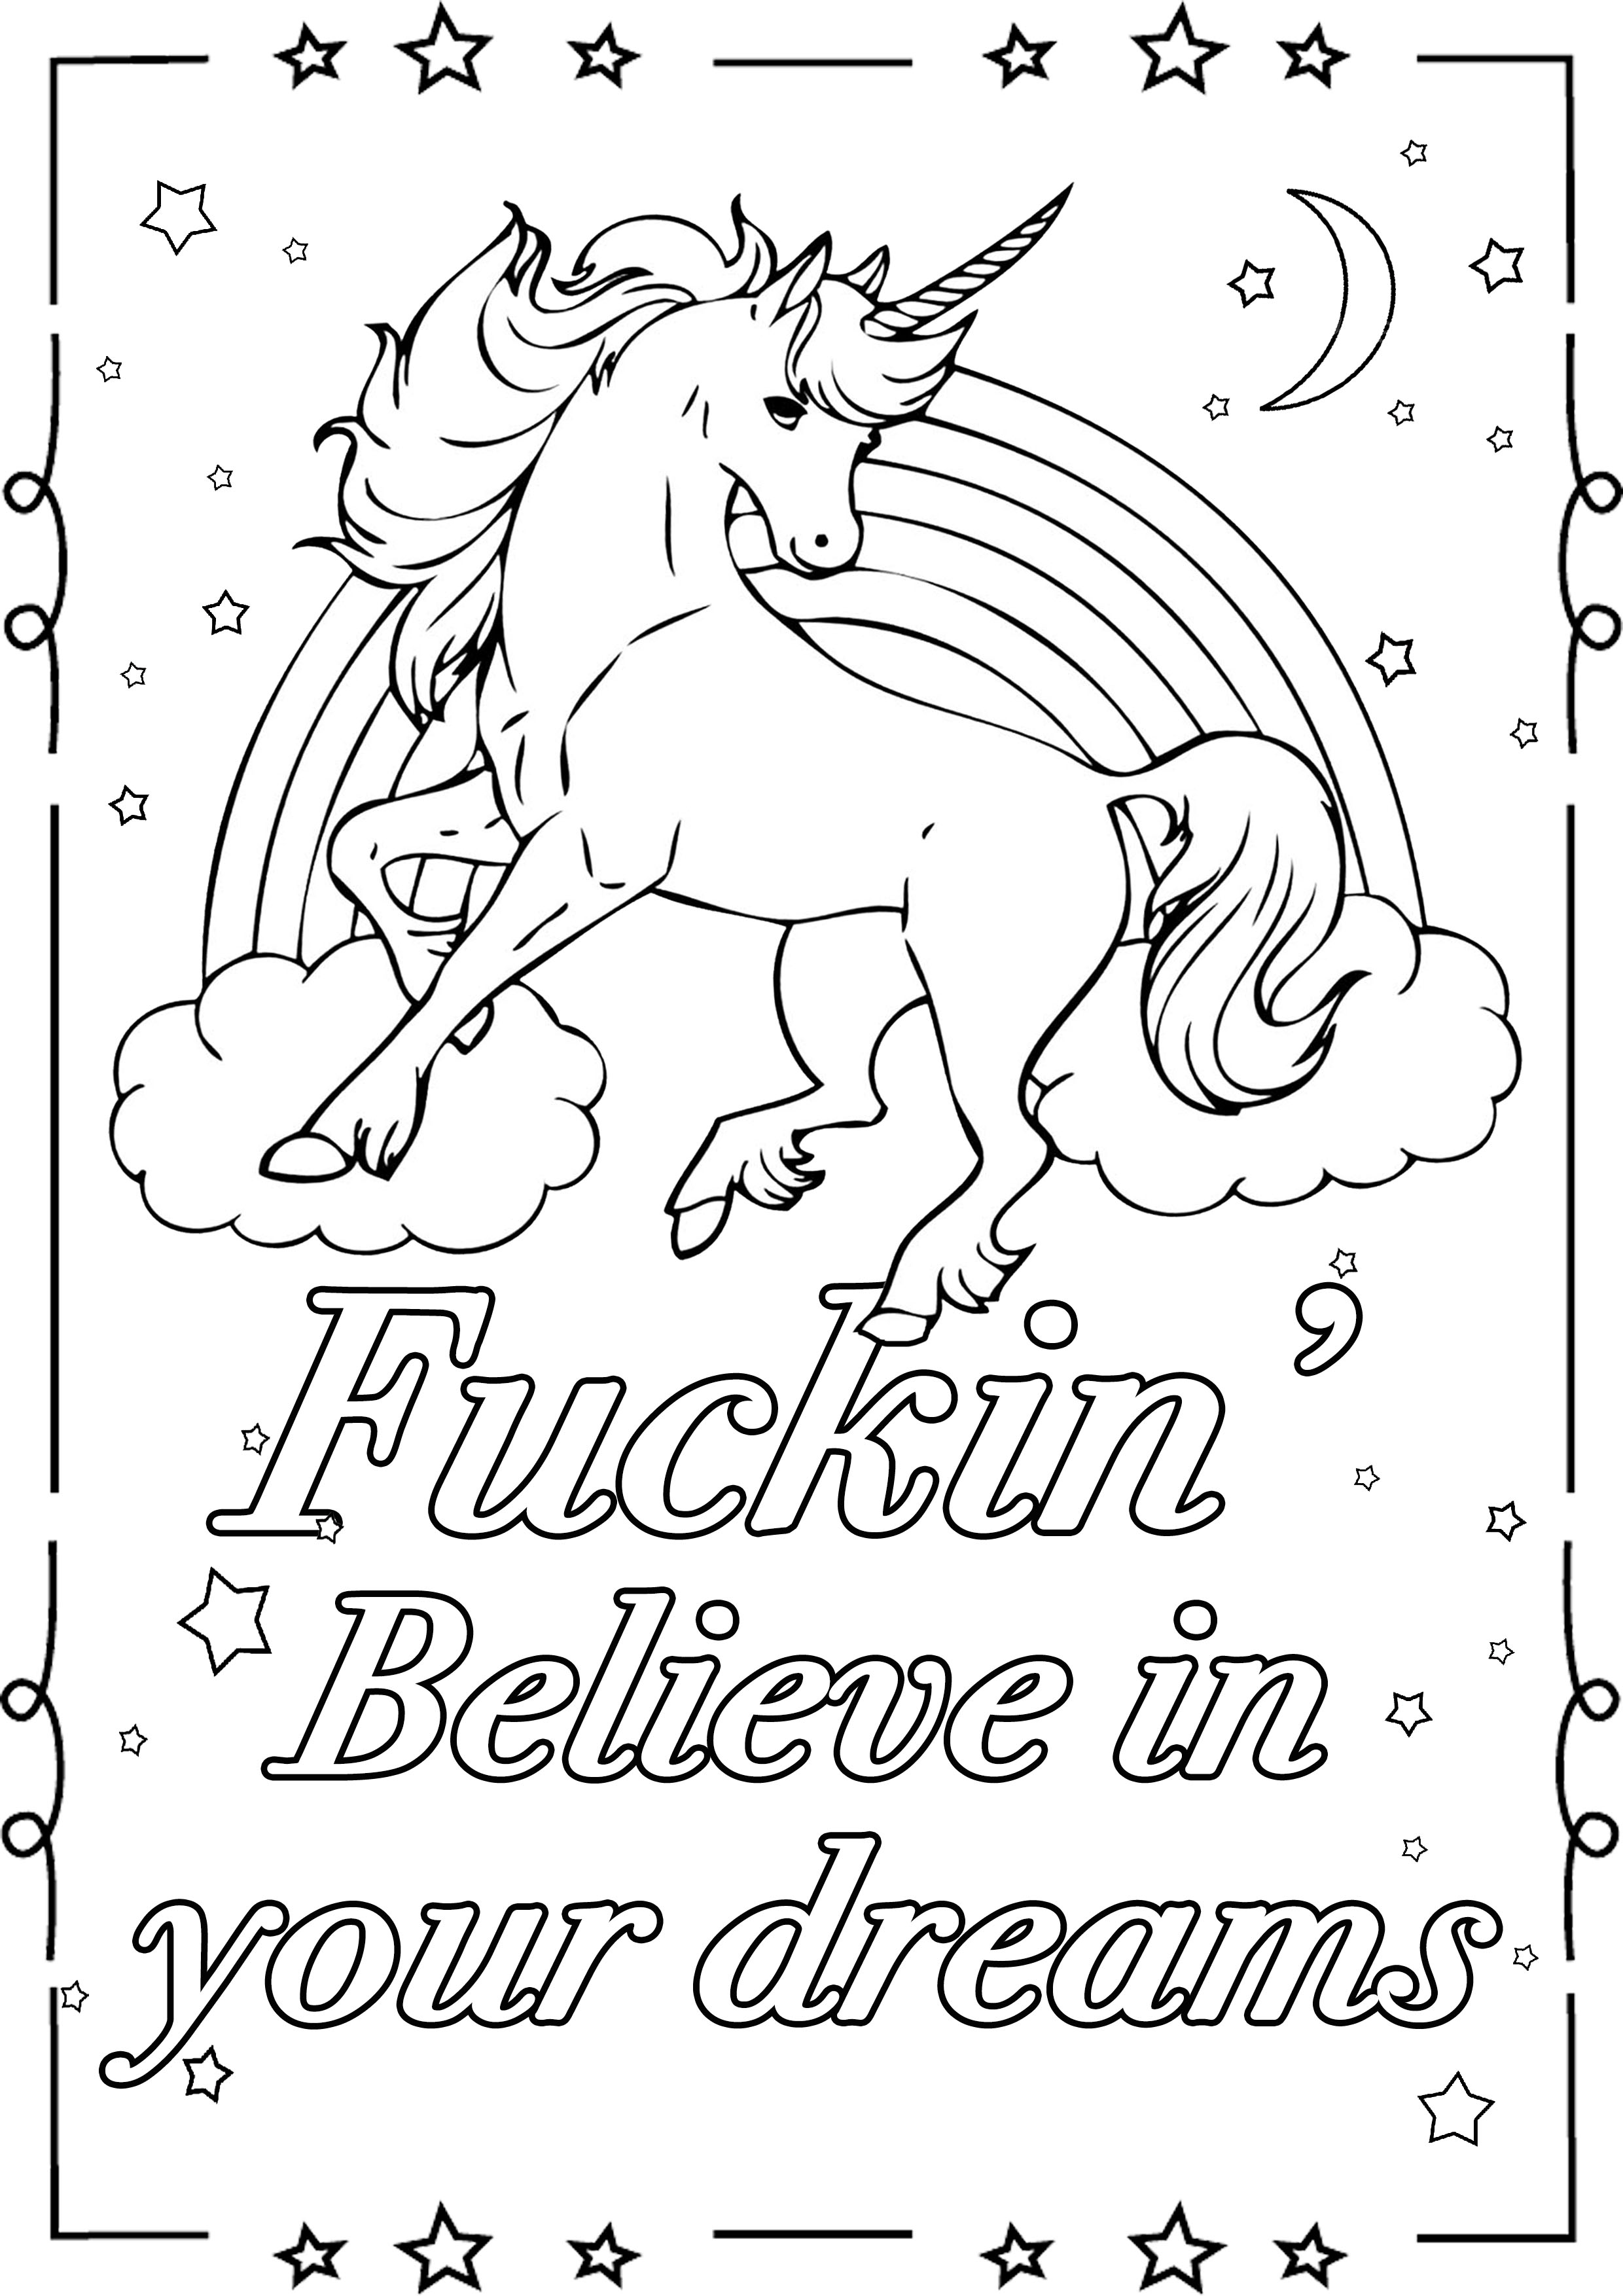 Credi nei tuoi sogni: pagina da colorare di parolacce con unicorno